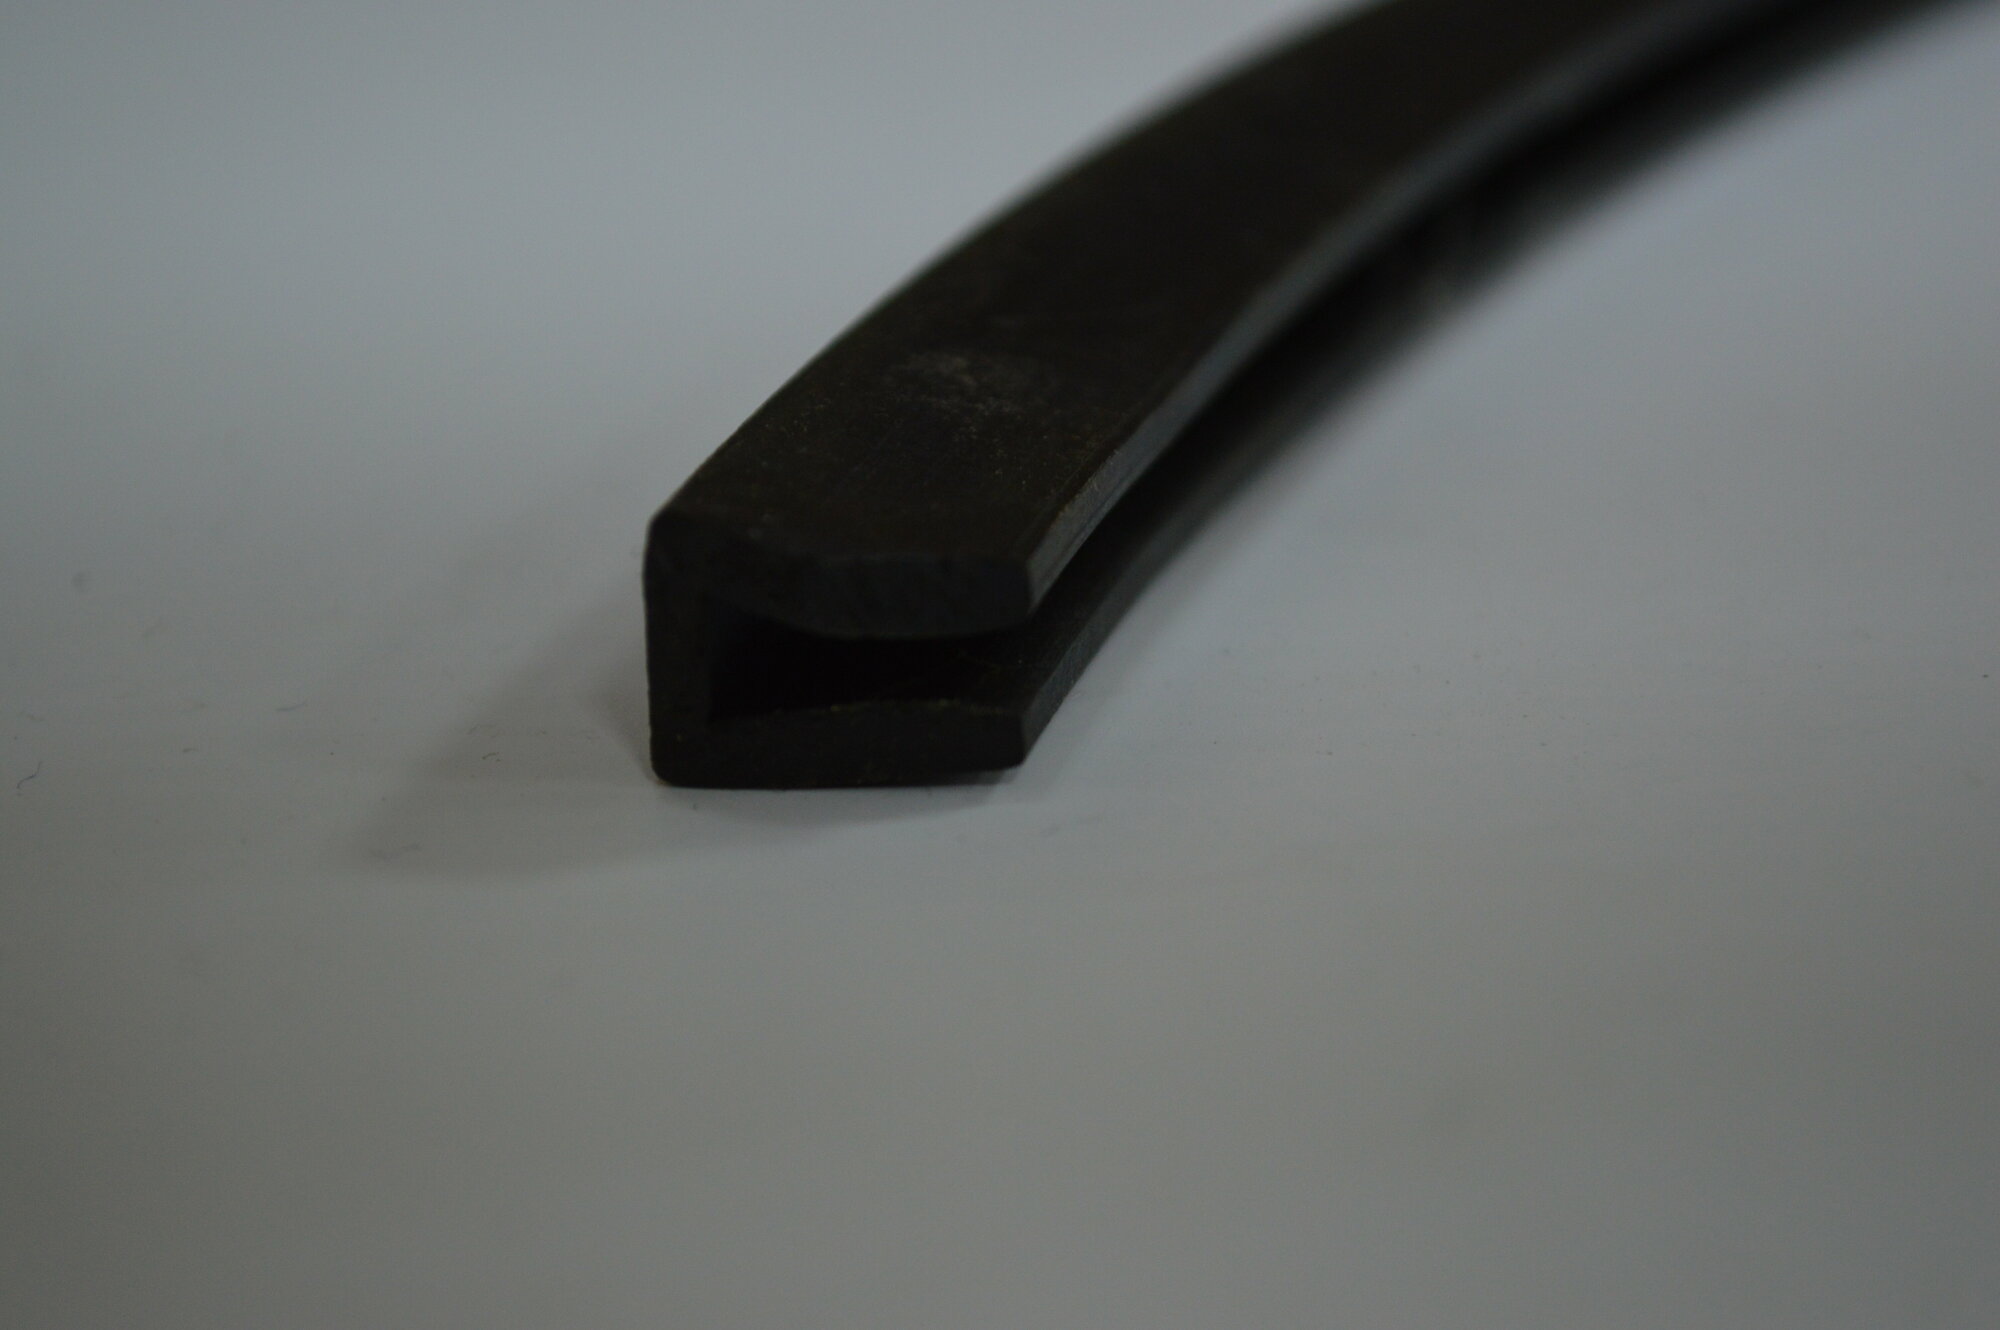 Профиль резиновый черный П-образный (14х9х4х25) для уплотнения стекол и метала. Толщина стекла 4 мм. Длина 3 метра.